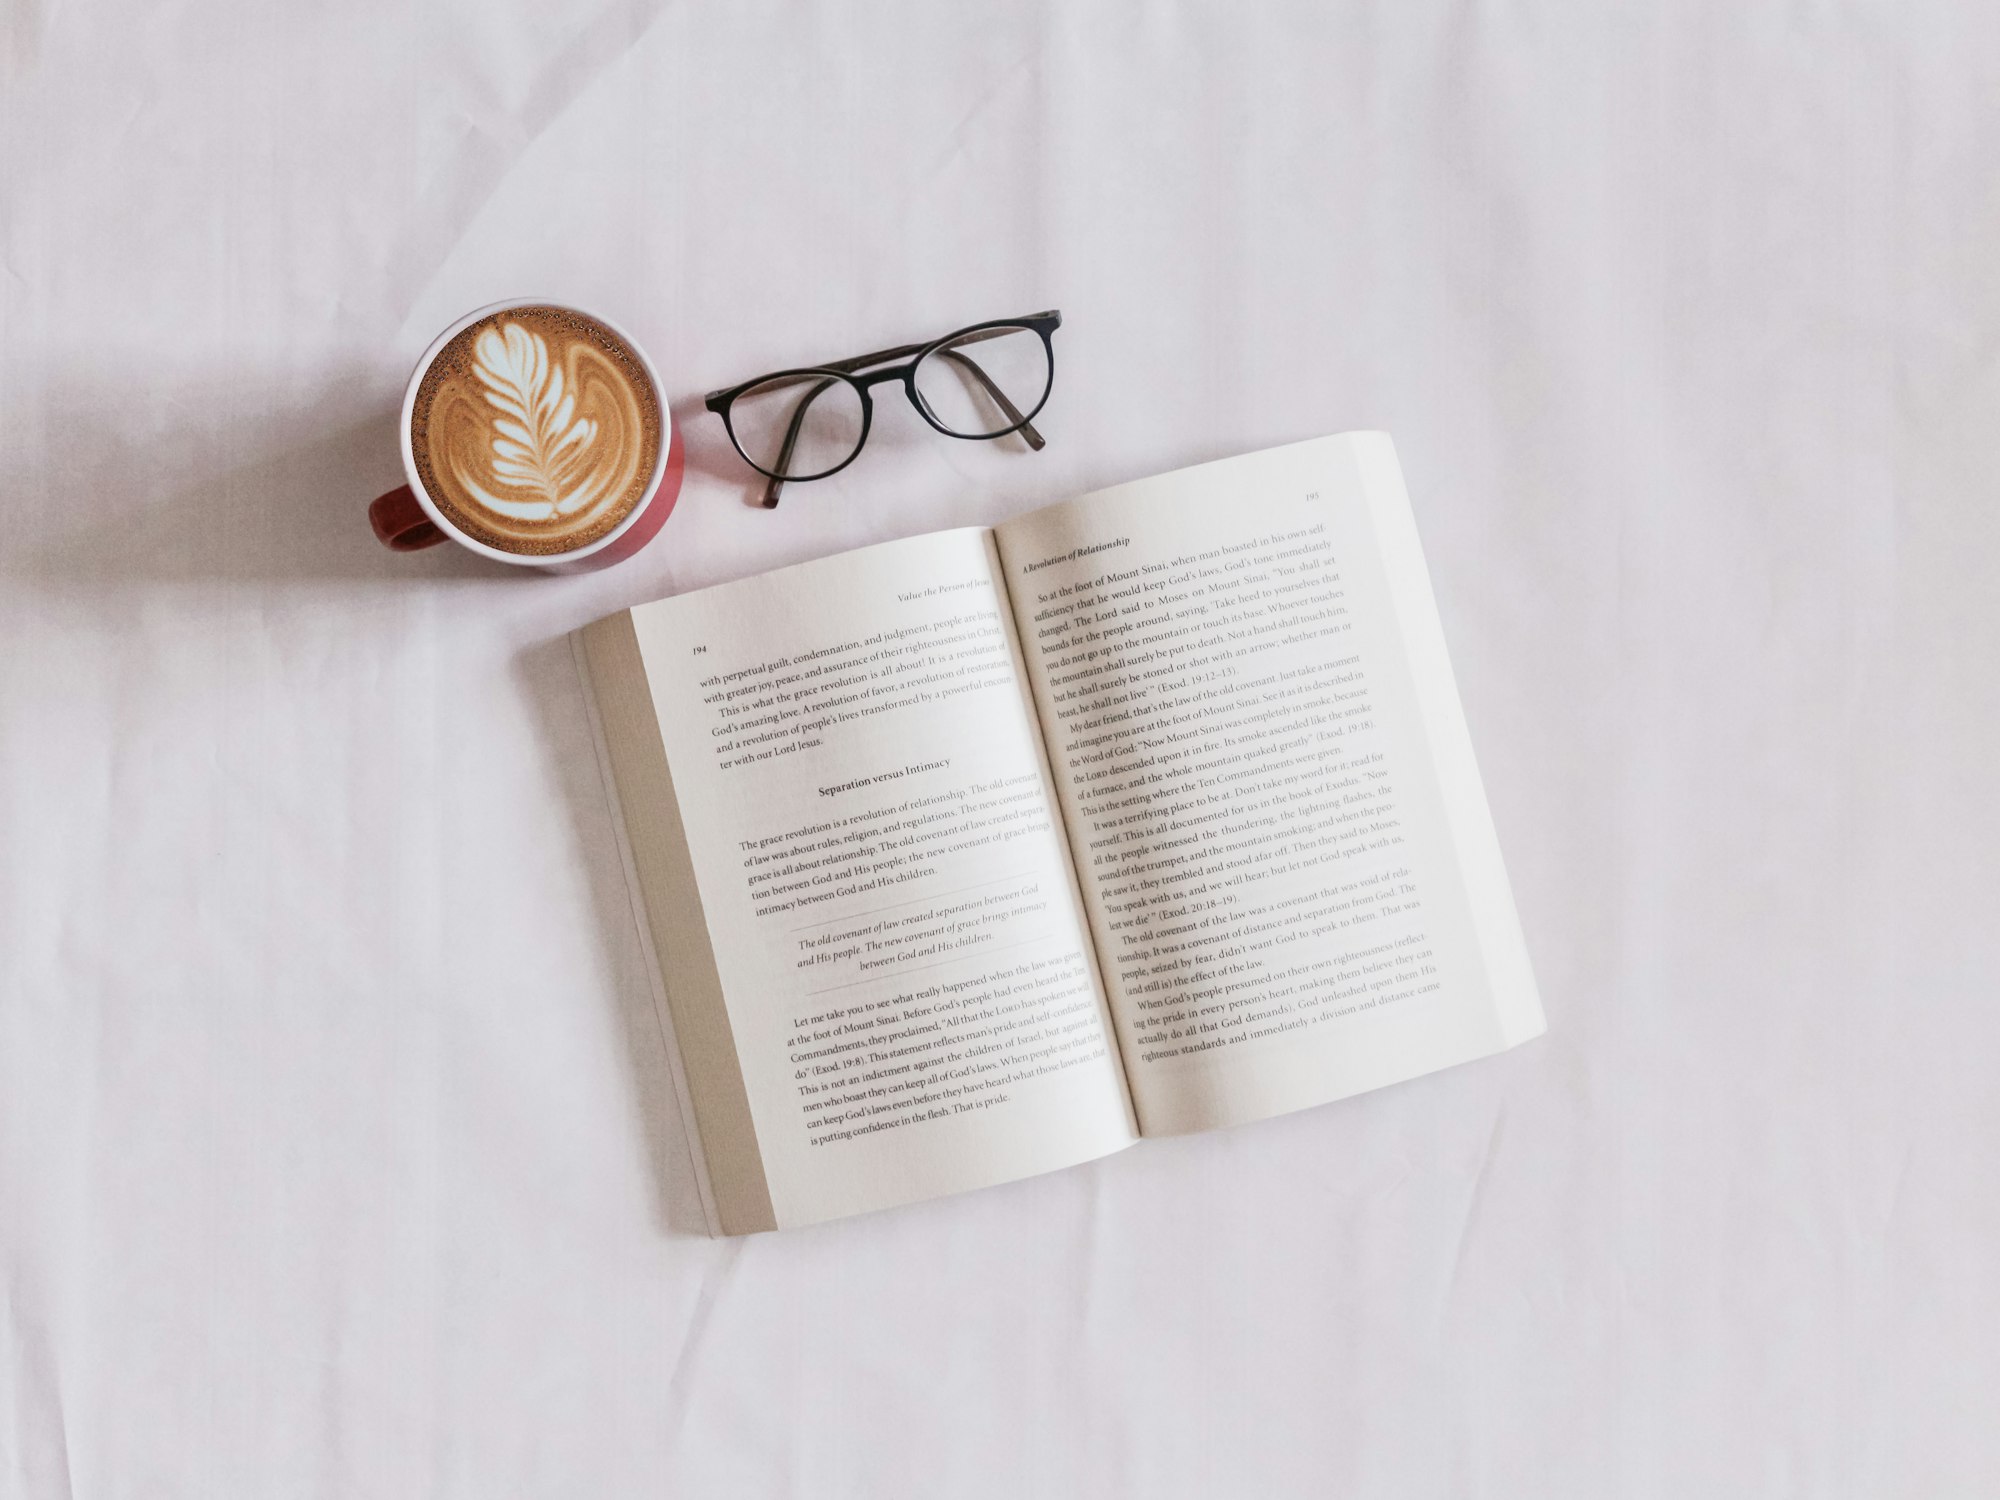 Coffee and A Book - Artigo ler livros por aplicativos